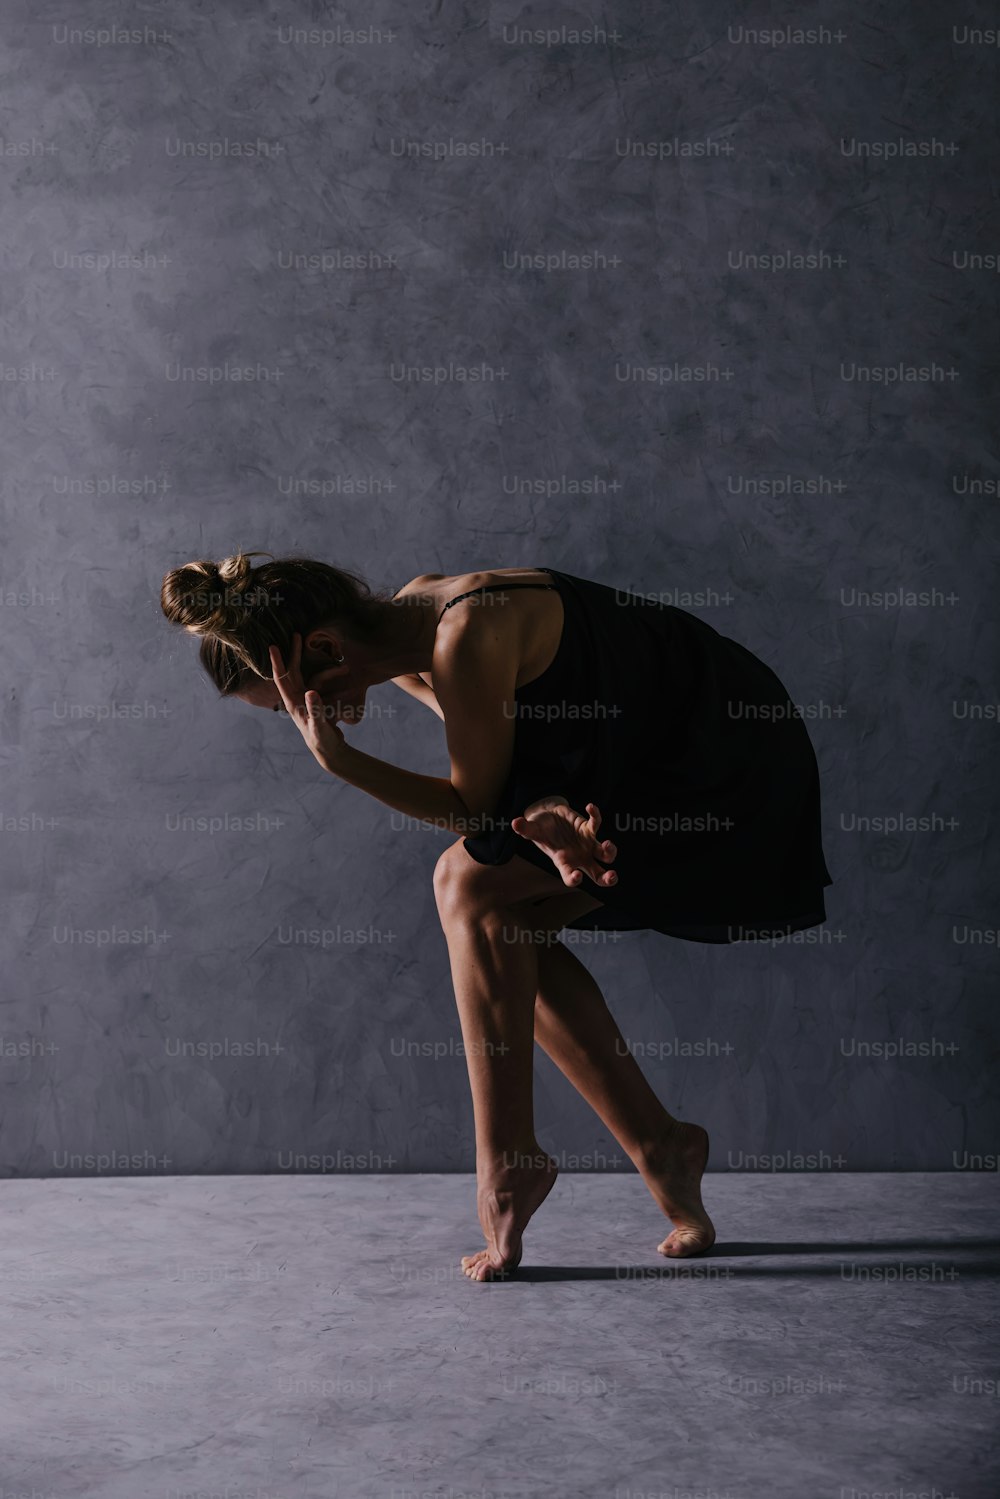 500+ Fotos de bailarines de ballet [HD]  Descargar imágenes gratis en  Unsplash